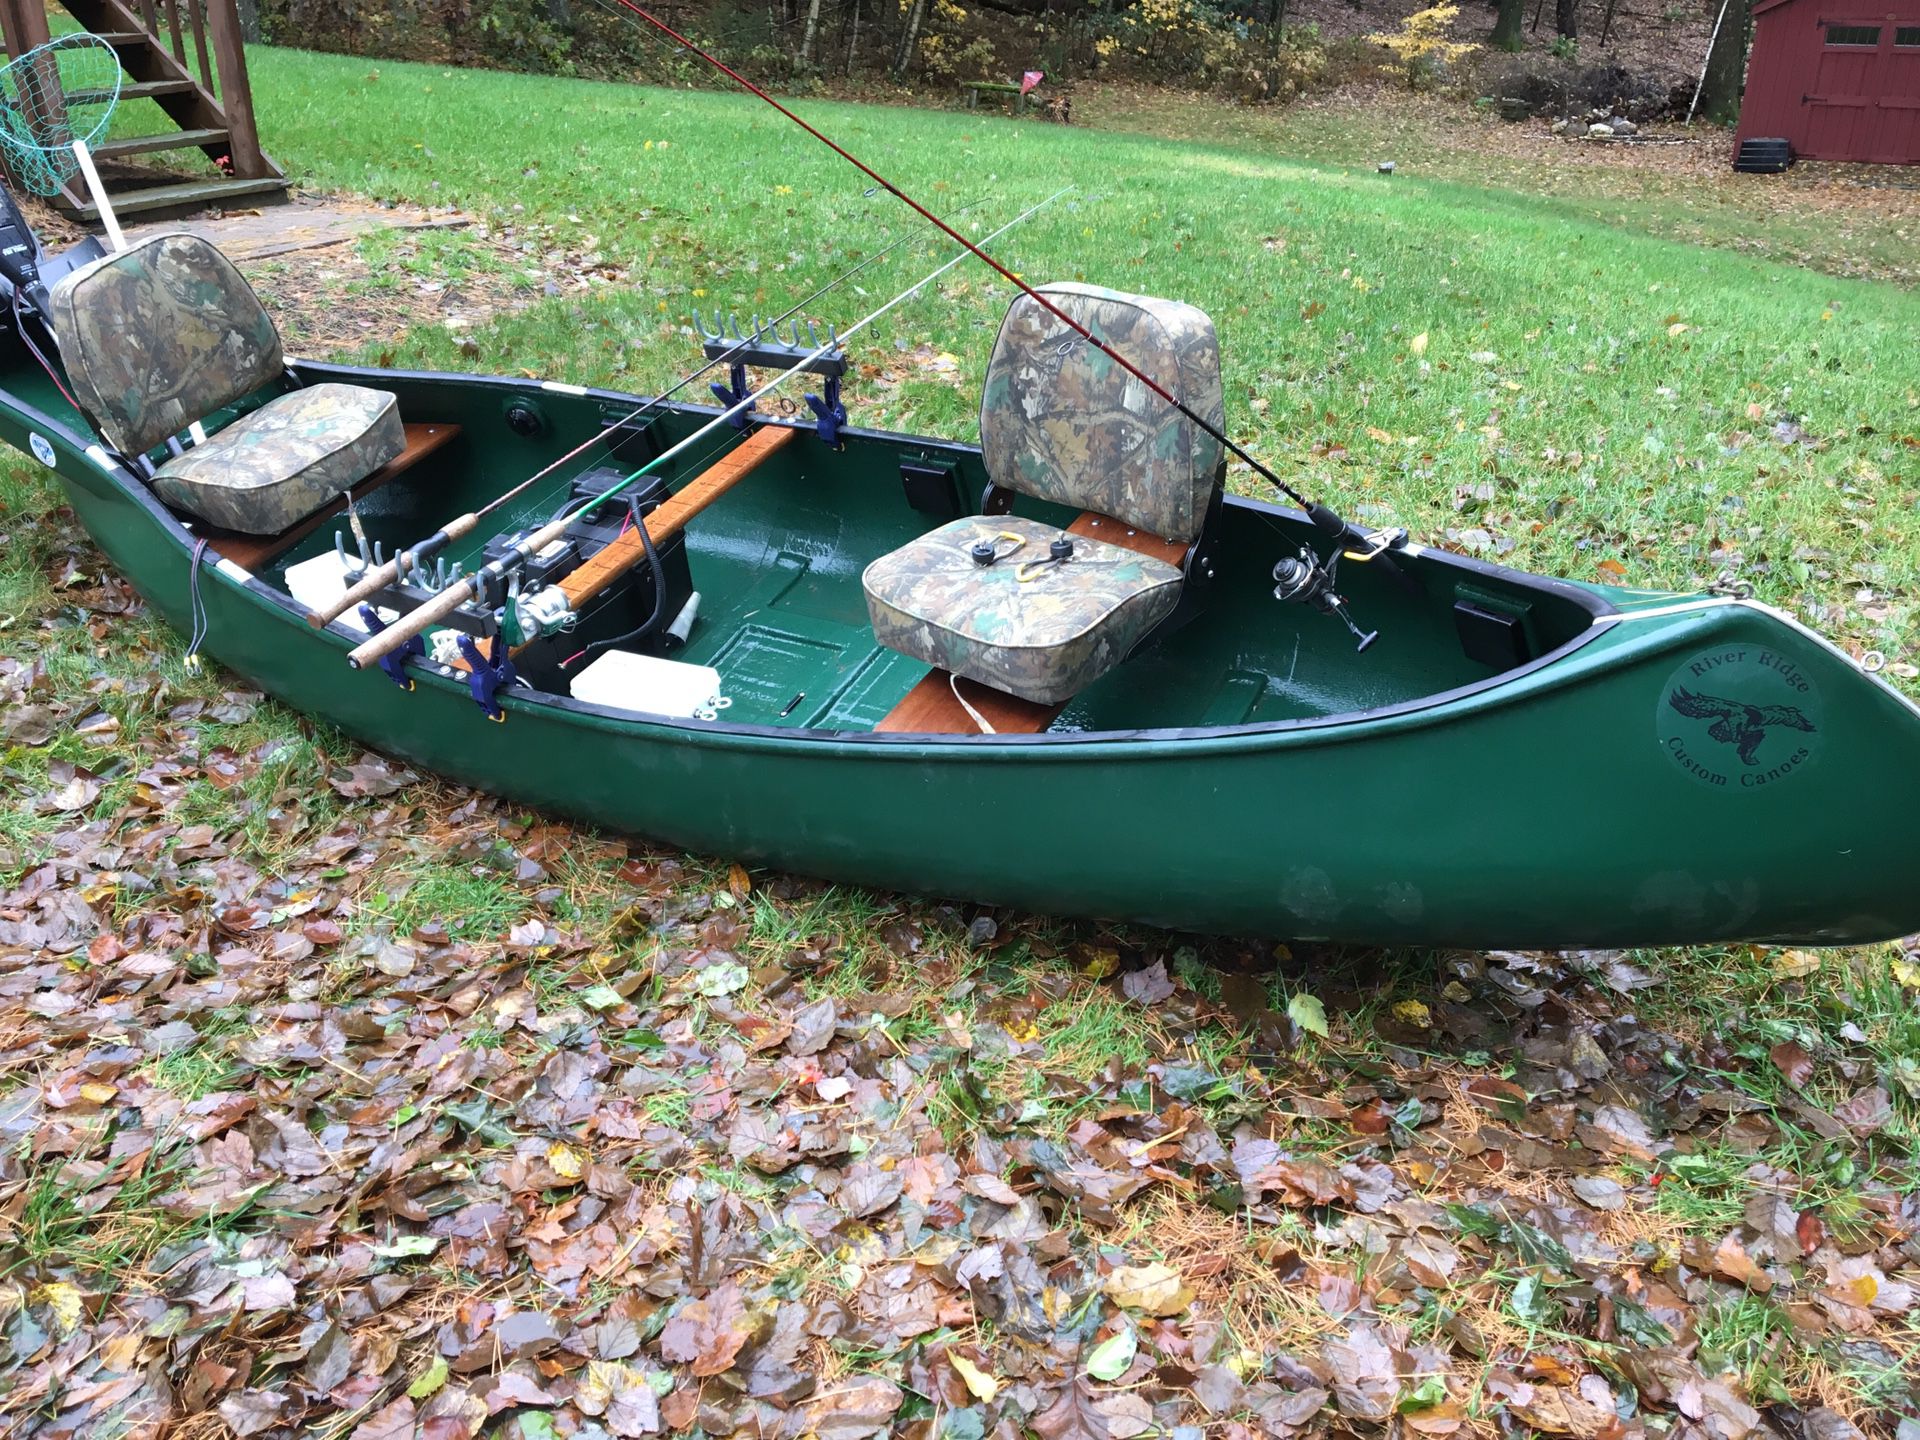 Canoe for Sale in Belchertown, MA - OfferUp